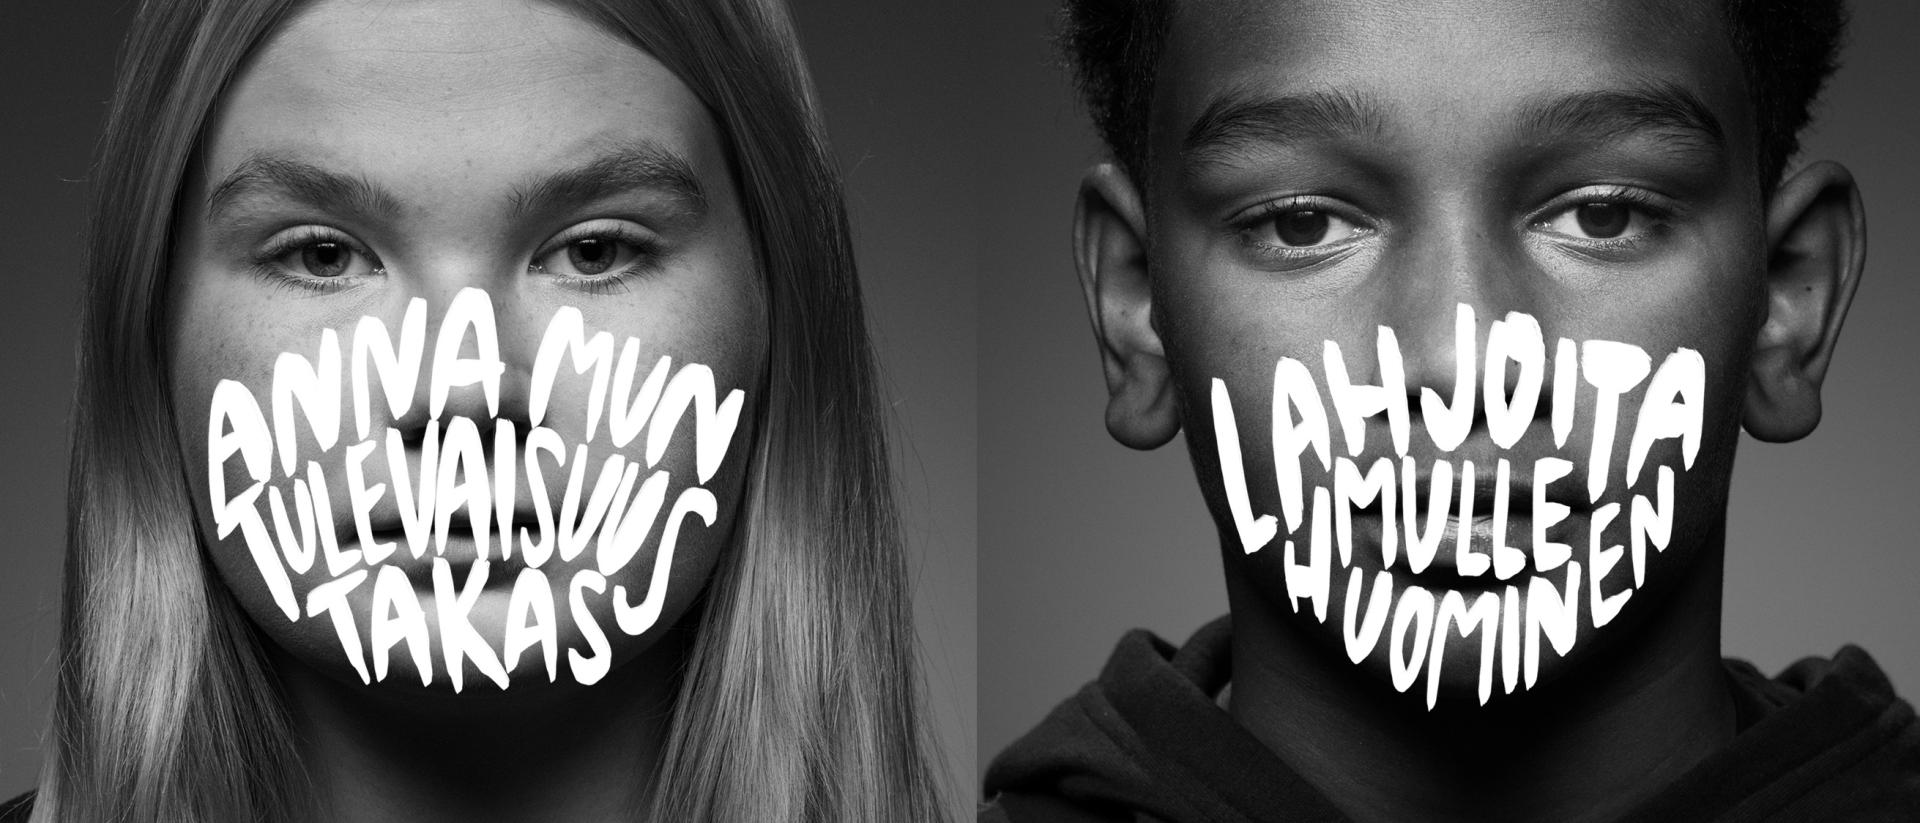 Kahden nuoren kasvot mustavalkokuvassa, teksti muodostaa maskin